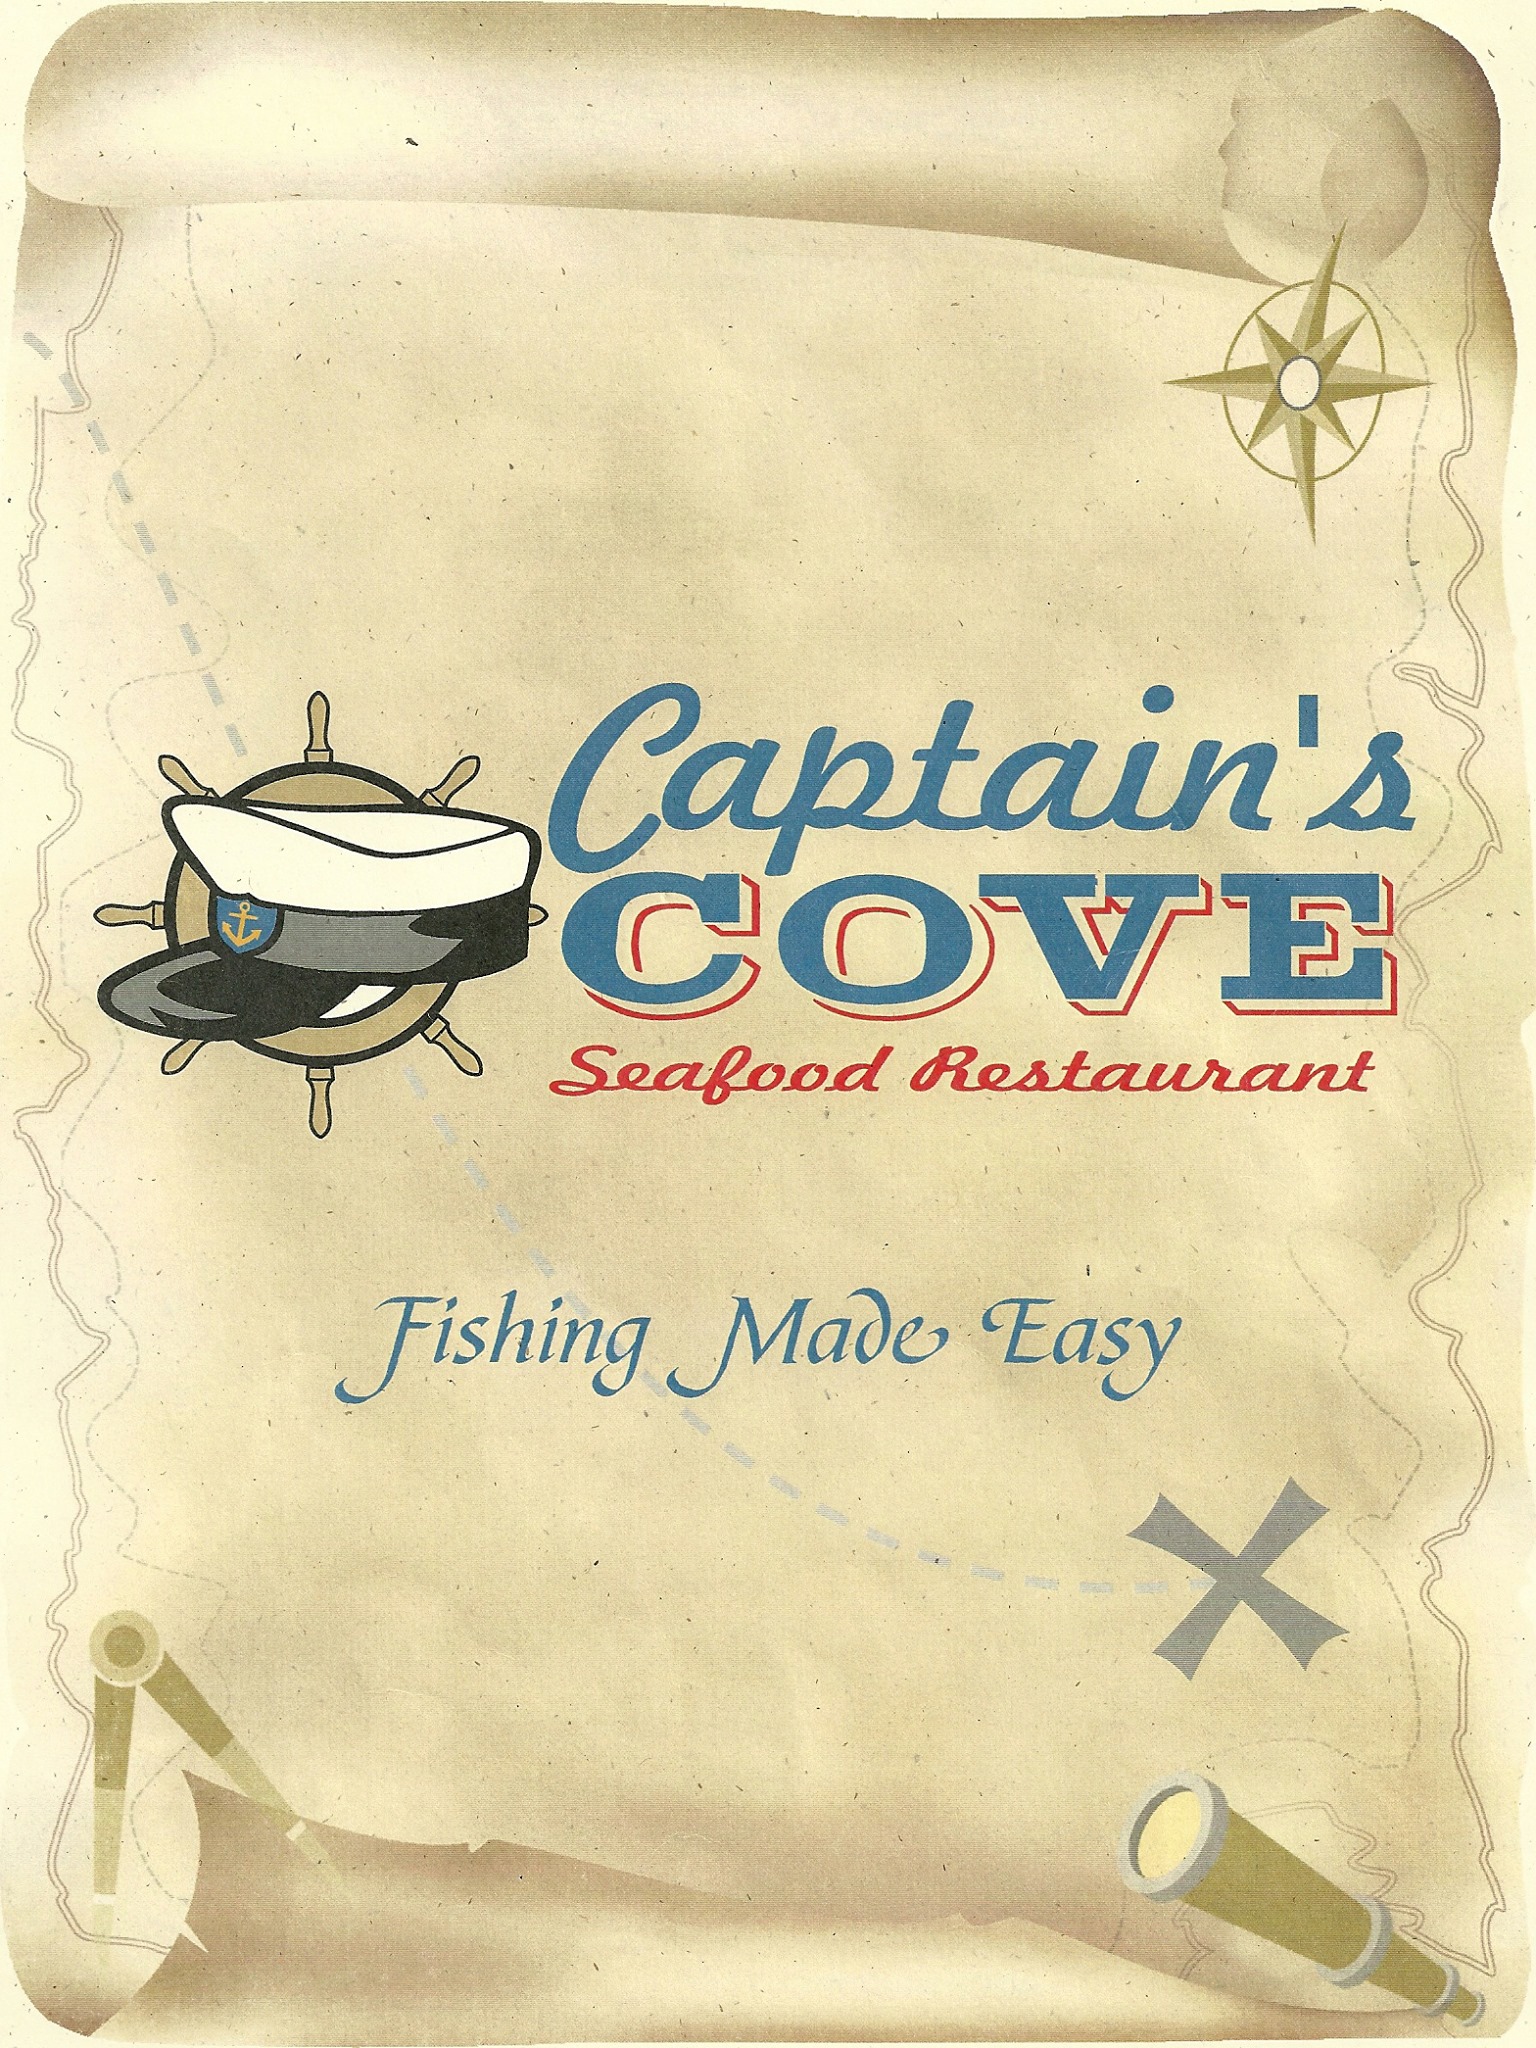 Captains Cove